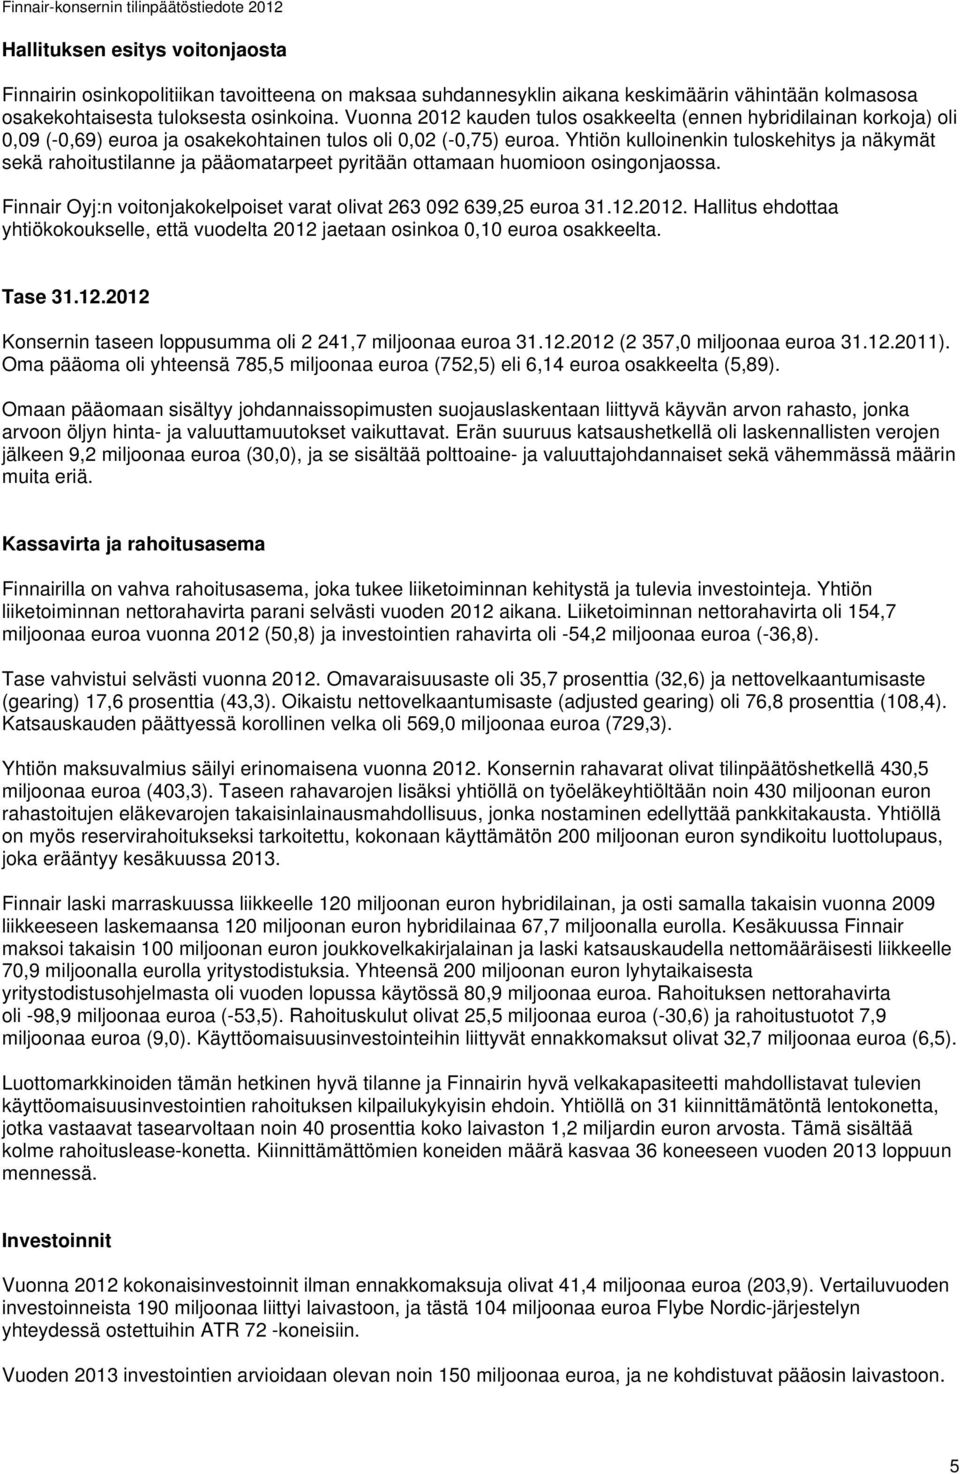 Yhtiön kulloinenkin tuloskehitys ja näkymät sekä rahoitustilanne ja pääomatarpeet pyritään ottamaan huomioon osingonjaossa. Finnair Oyj:n voitonjakokelpoiset varat olivat 263 092 639,25 euroa 31.12.